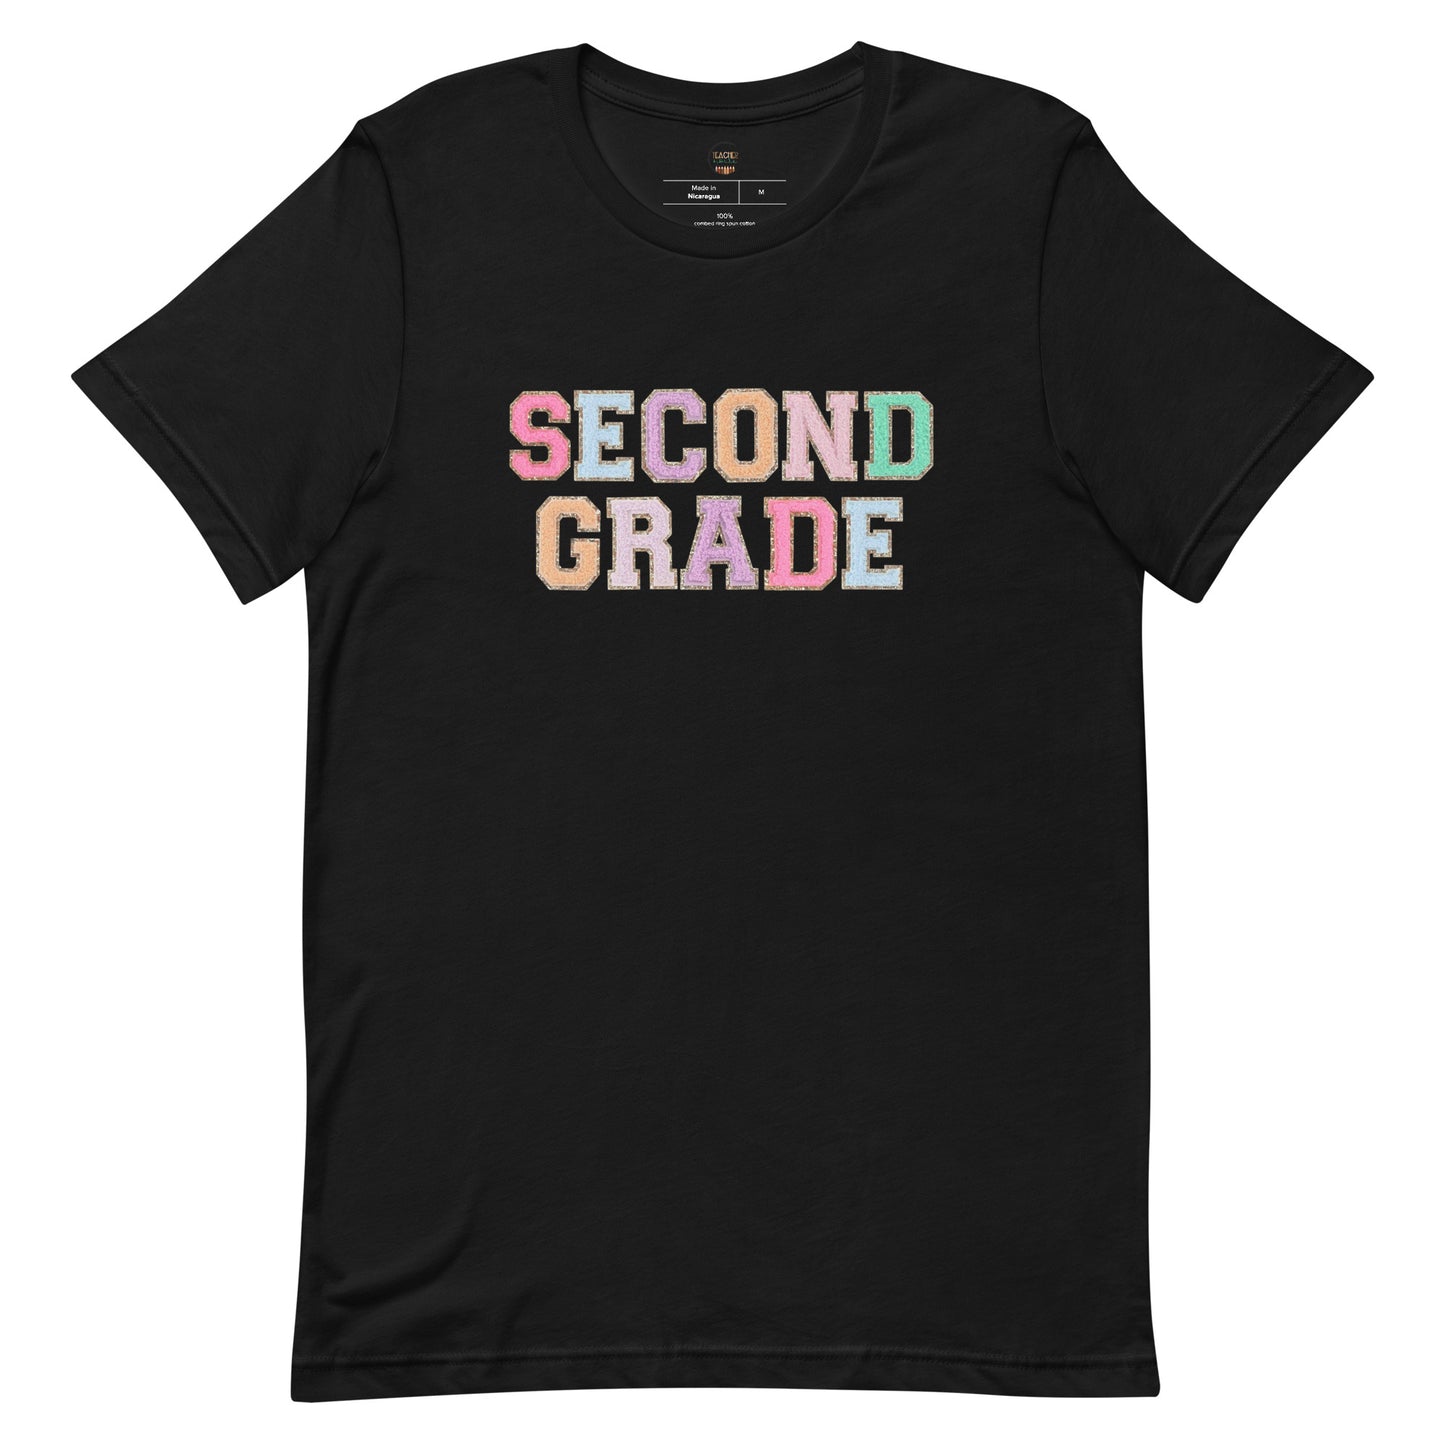 Second Grade Teacher Shirt (faux letter patches)